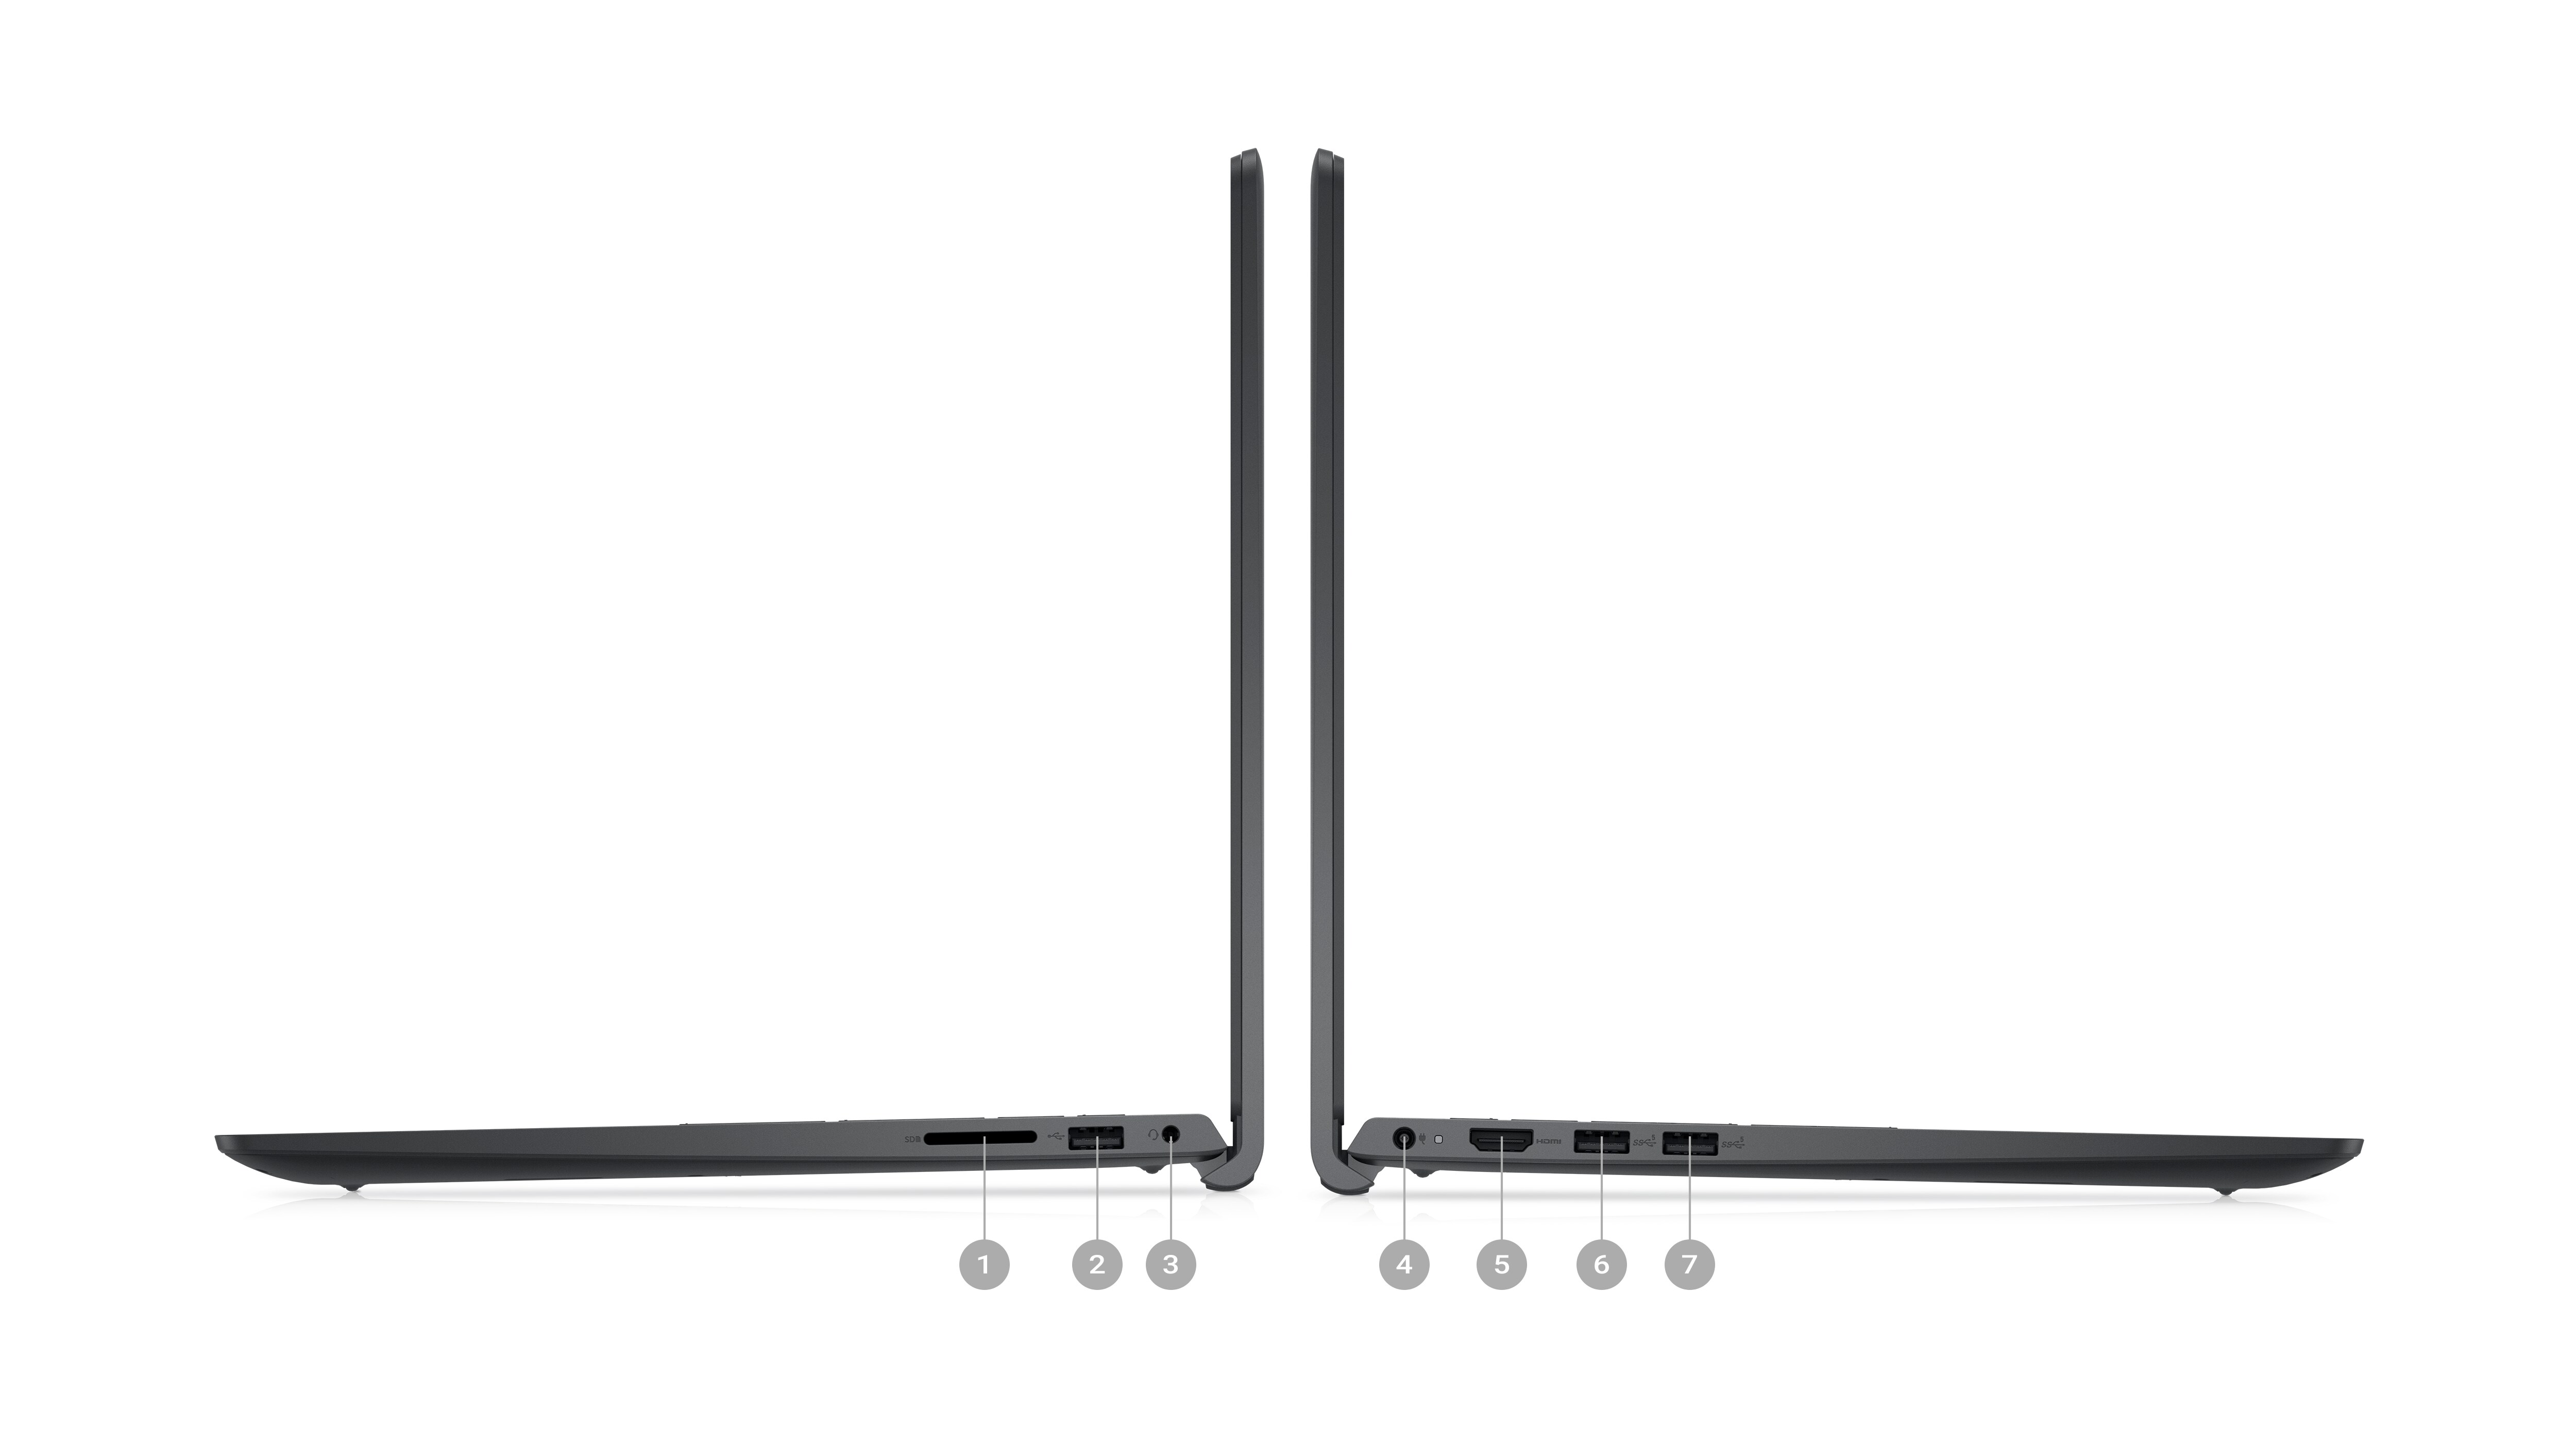 Abbildung von zwei seitlich platzierten Dell Laptops vom Typ Inspiron 15 3525, wobei die Zahlen von 1 bis 7 die Anschlüsse am Produkt kennzeichnen.